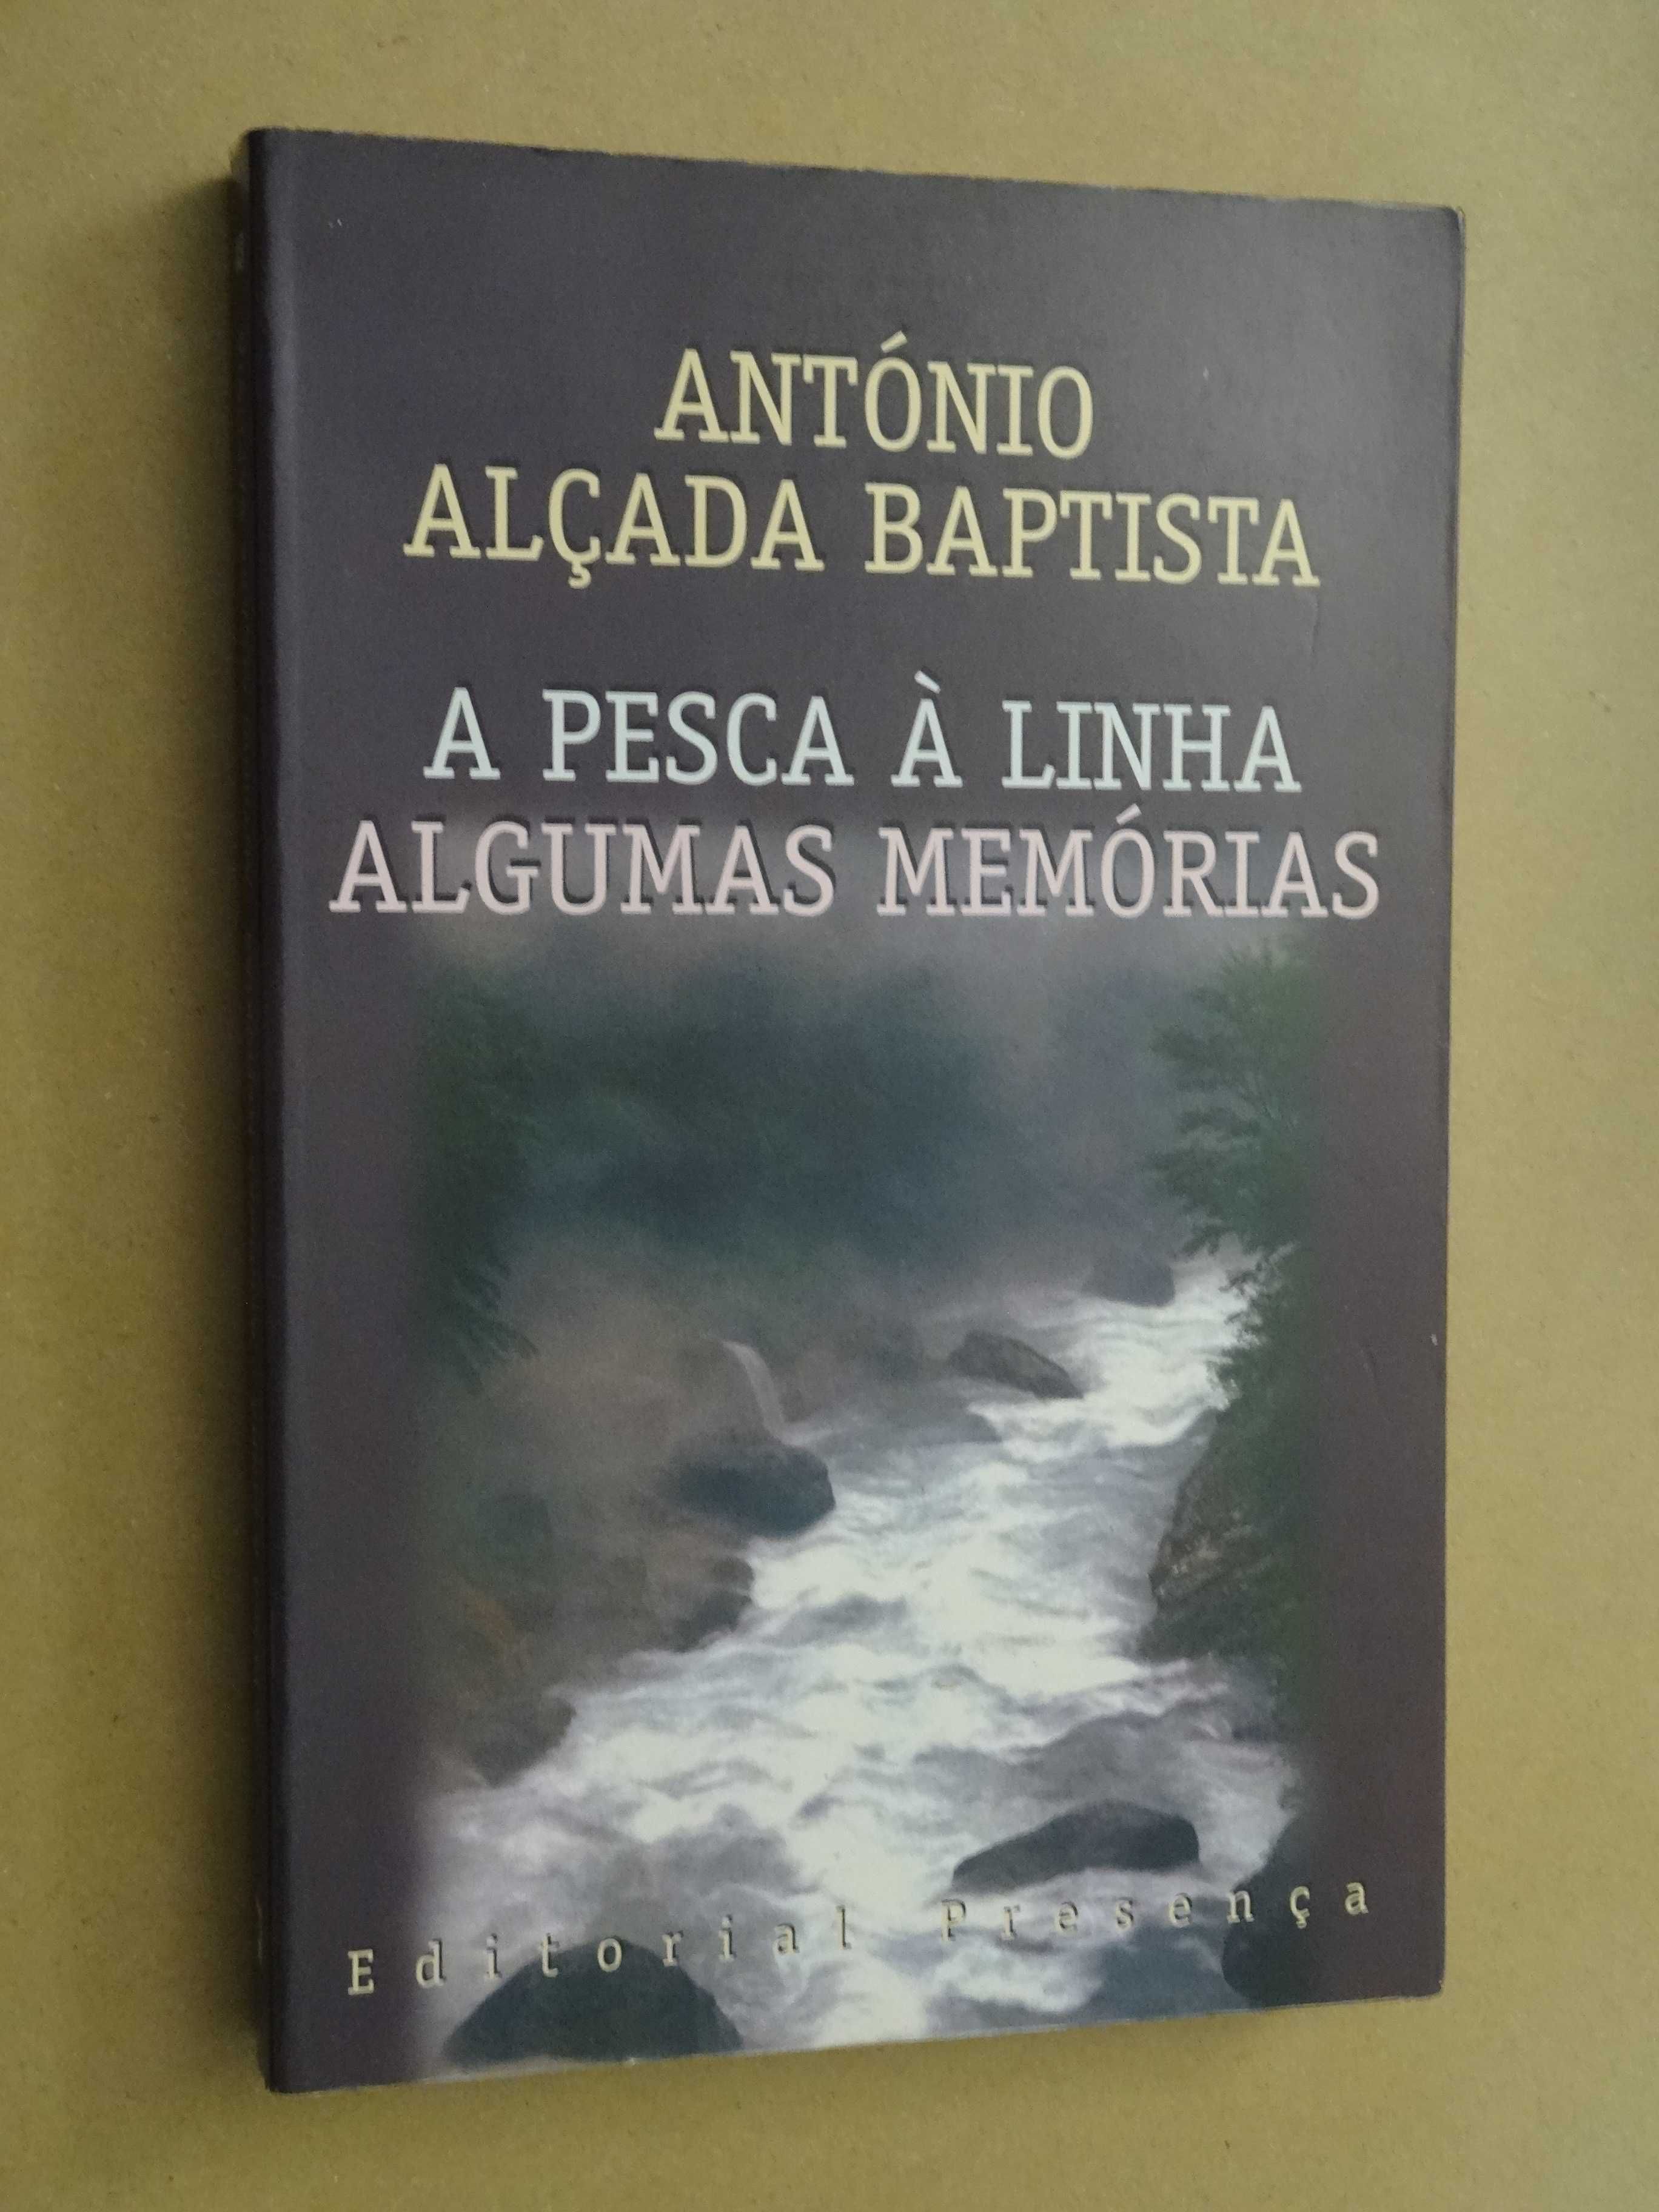 Pesca à Linha - Algumas Memórias de António Alçada Baptista - 1ª Ed.